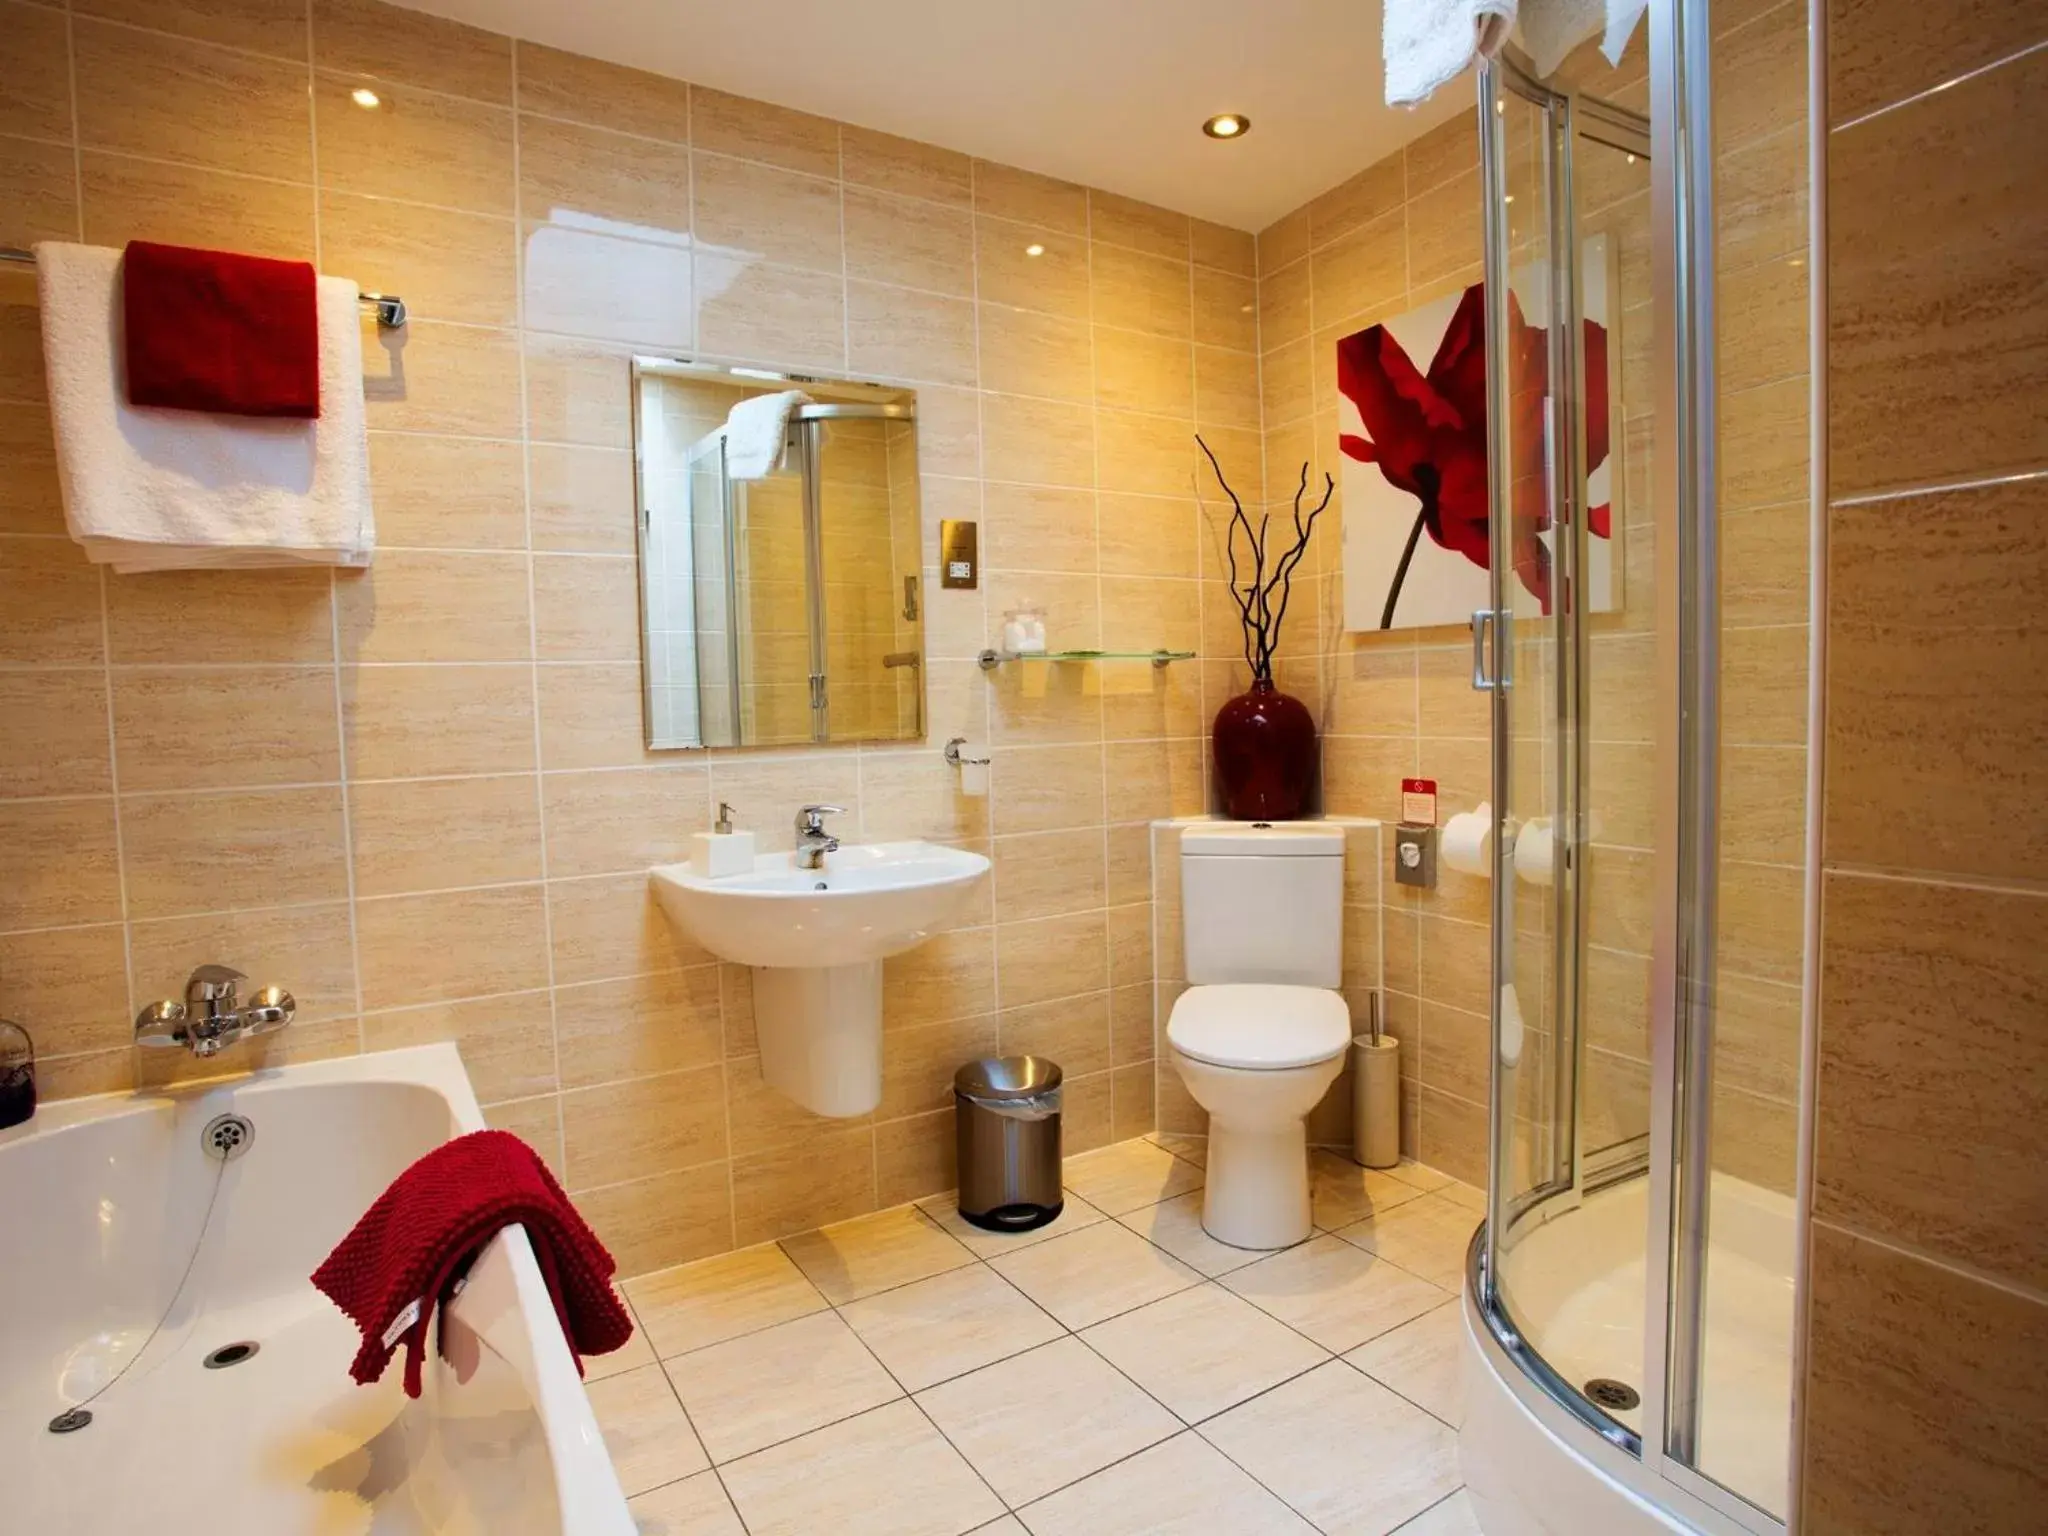 Bathroom in Bath House Hotel